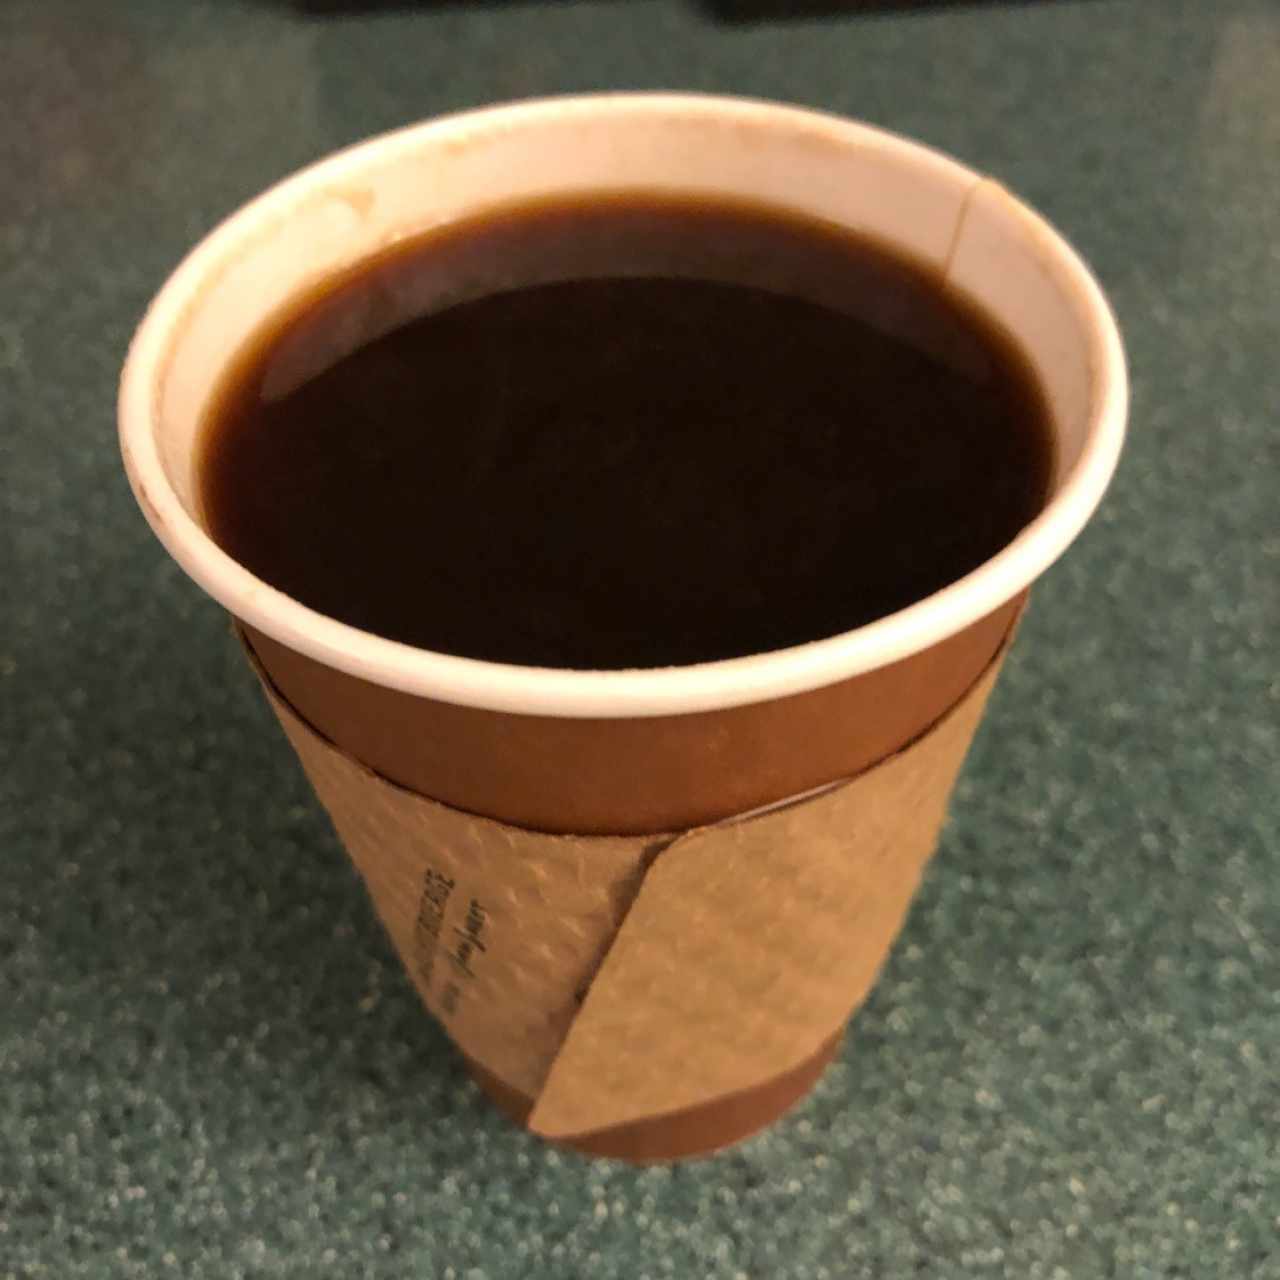 café negro